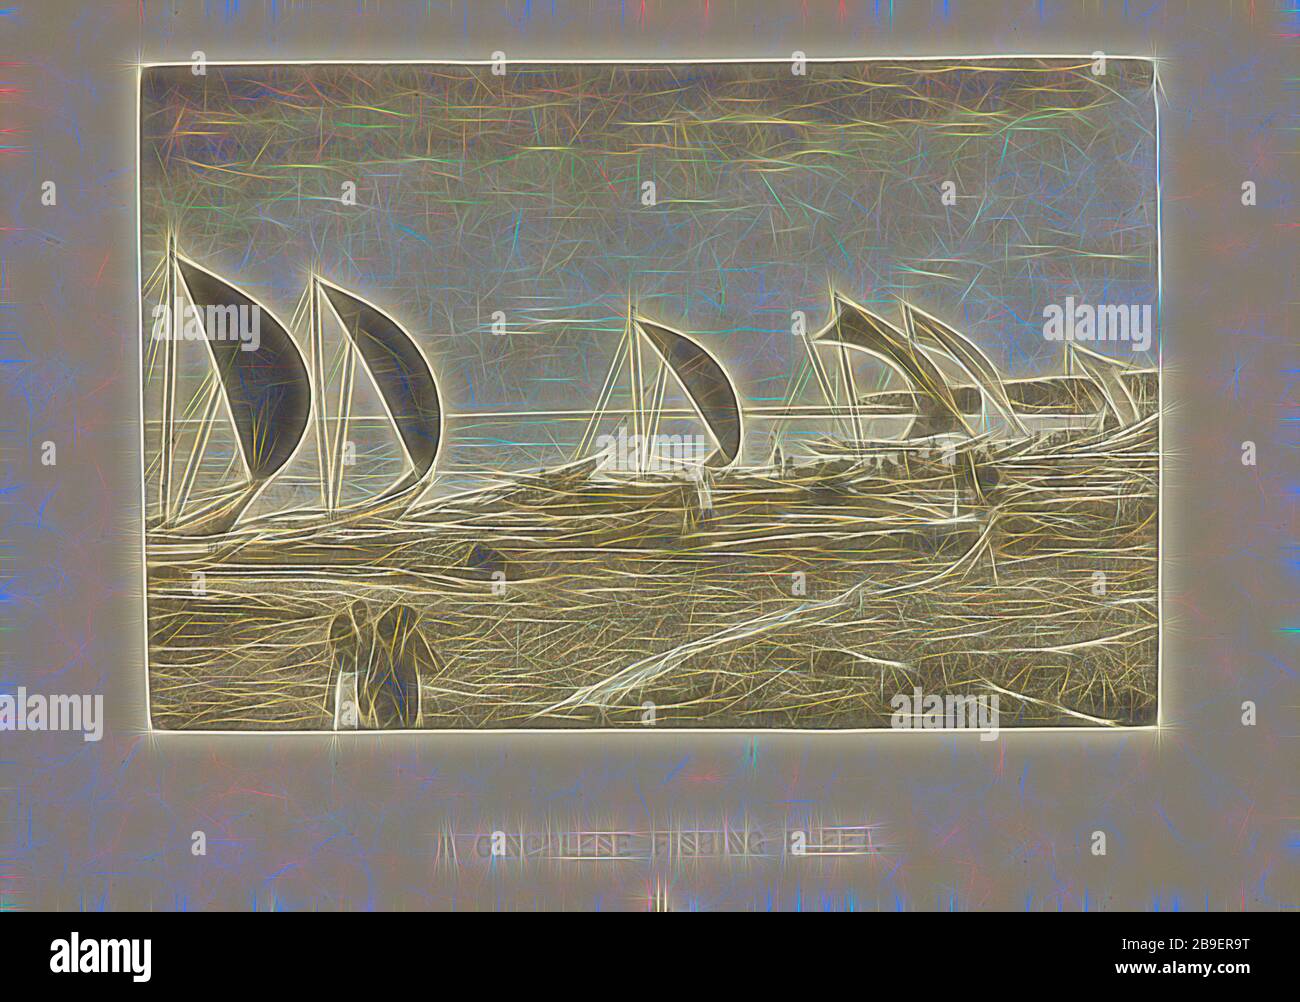 Une flotte de pêche Singhalese, Henry W. Cave (Anglais, 1854 - 1913), Sri Lanka, vers 1890, Photographe, 5,9 × 8,9 cm (2 5,16 × 3 1,2 po, réinventé par Gibon, design de glanissement chaleureux et joyeux de la luminosité et des rayons de lumière radiance. L'art classique réinventé avec une touche moderne. La photographie inspirée du futurisme, qui embrasse l'énergie dynamique de la technologie moderne, du mouvement, de la vitesse et révolutionne la culture. Banque D'Images